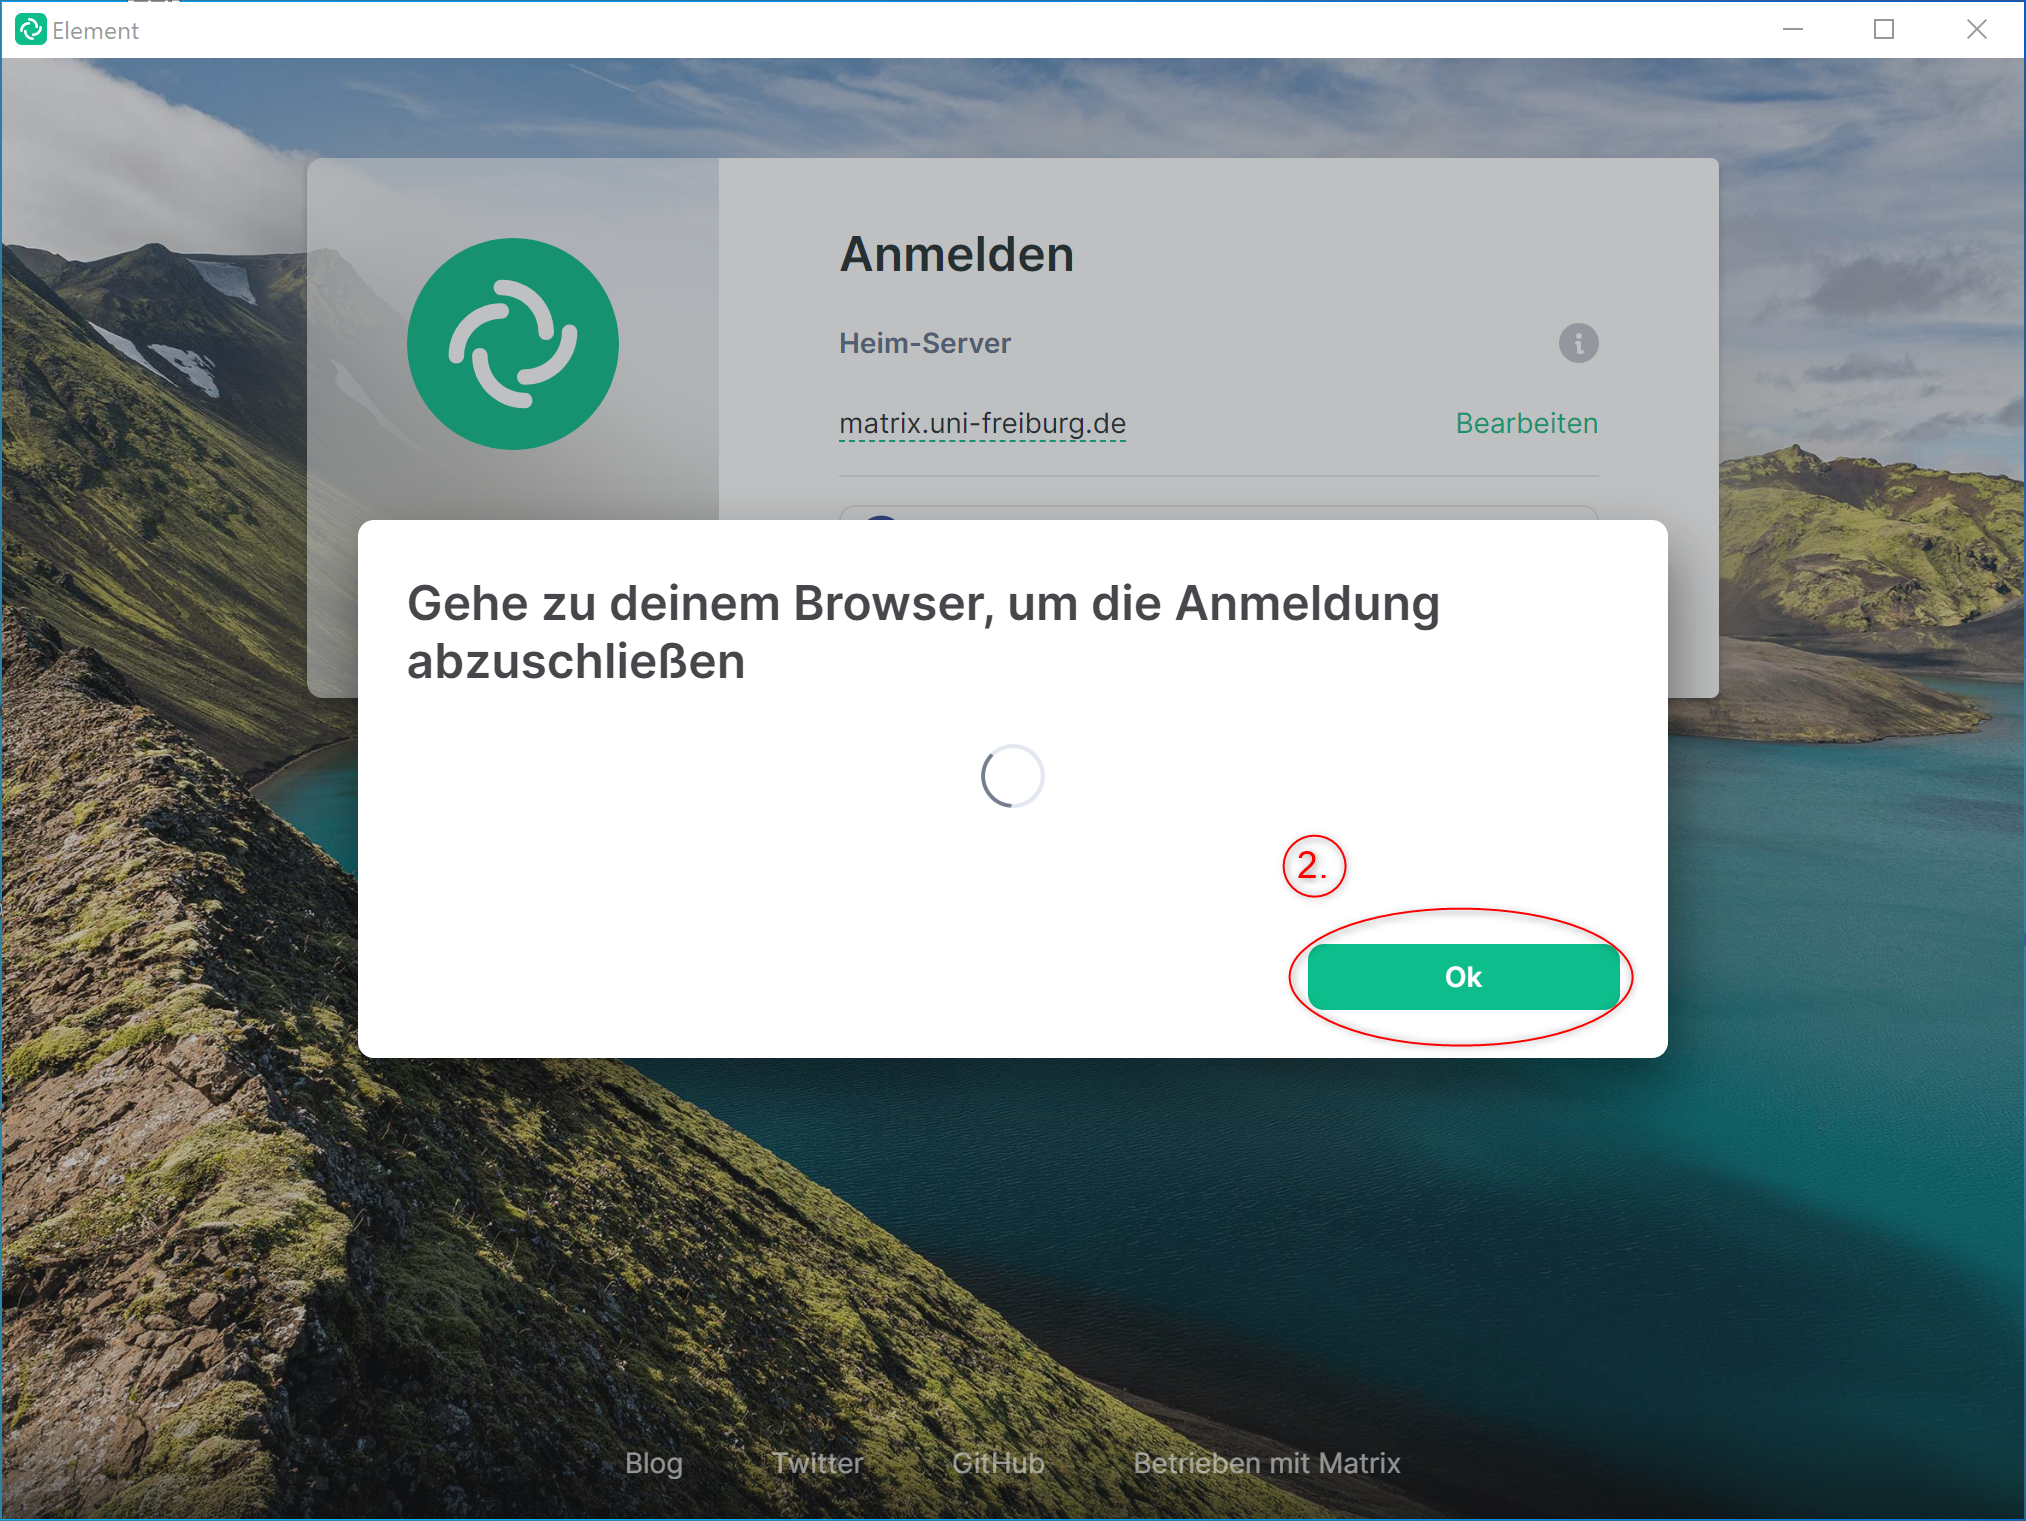 Screenshot: Neues Fenster in der Anmeldemaske mit Aufforderung Gehe zu deinem Browser um die Anmeldung abzuschließen. Hervorgehobener OK-Button, markiert als Schritt 2